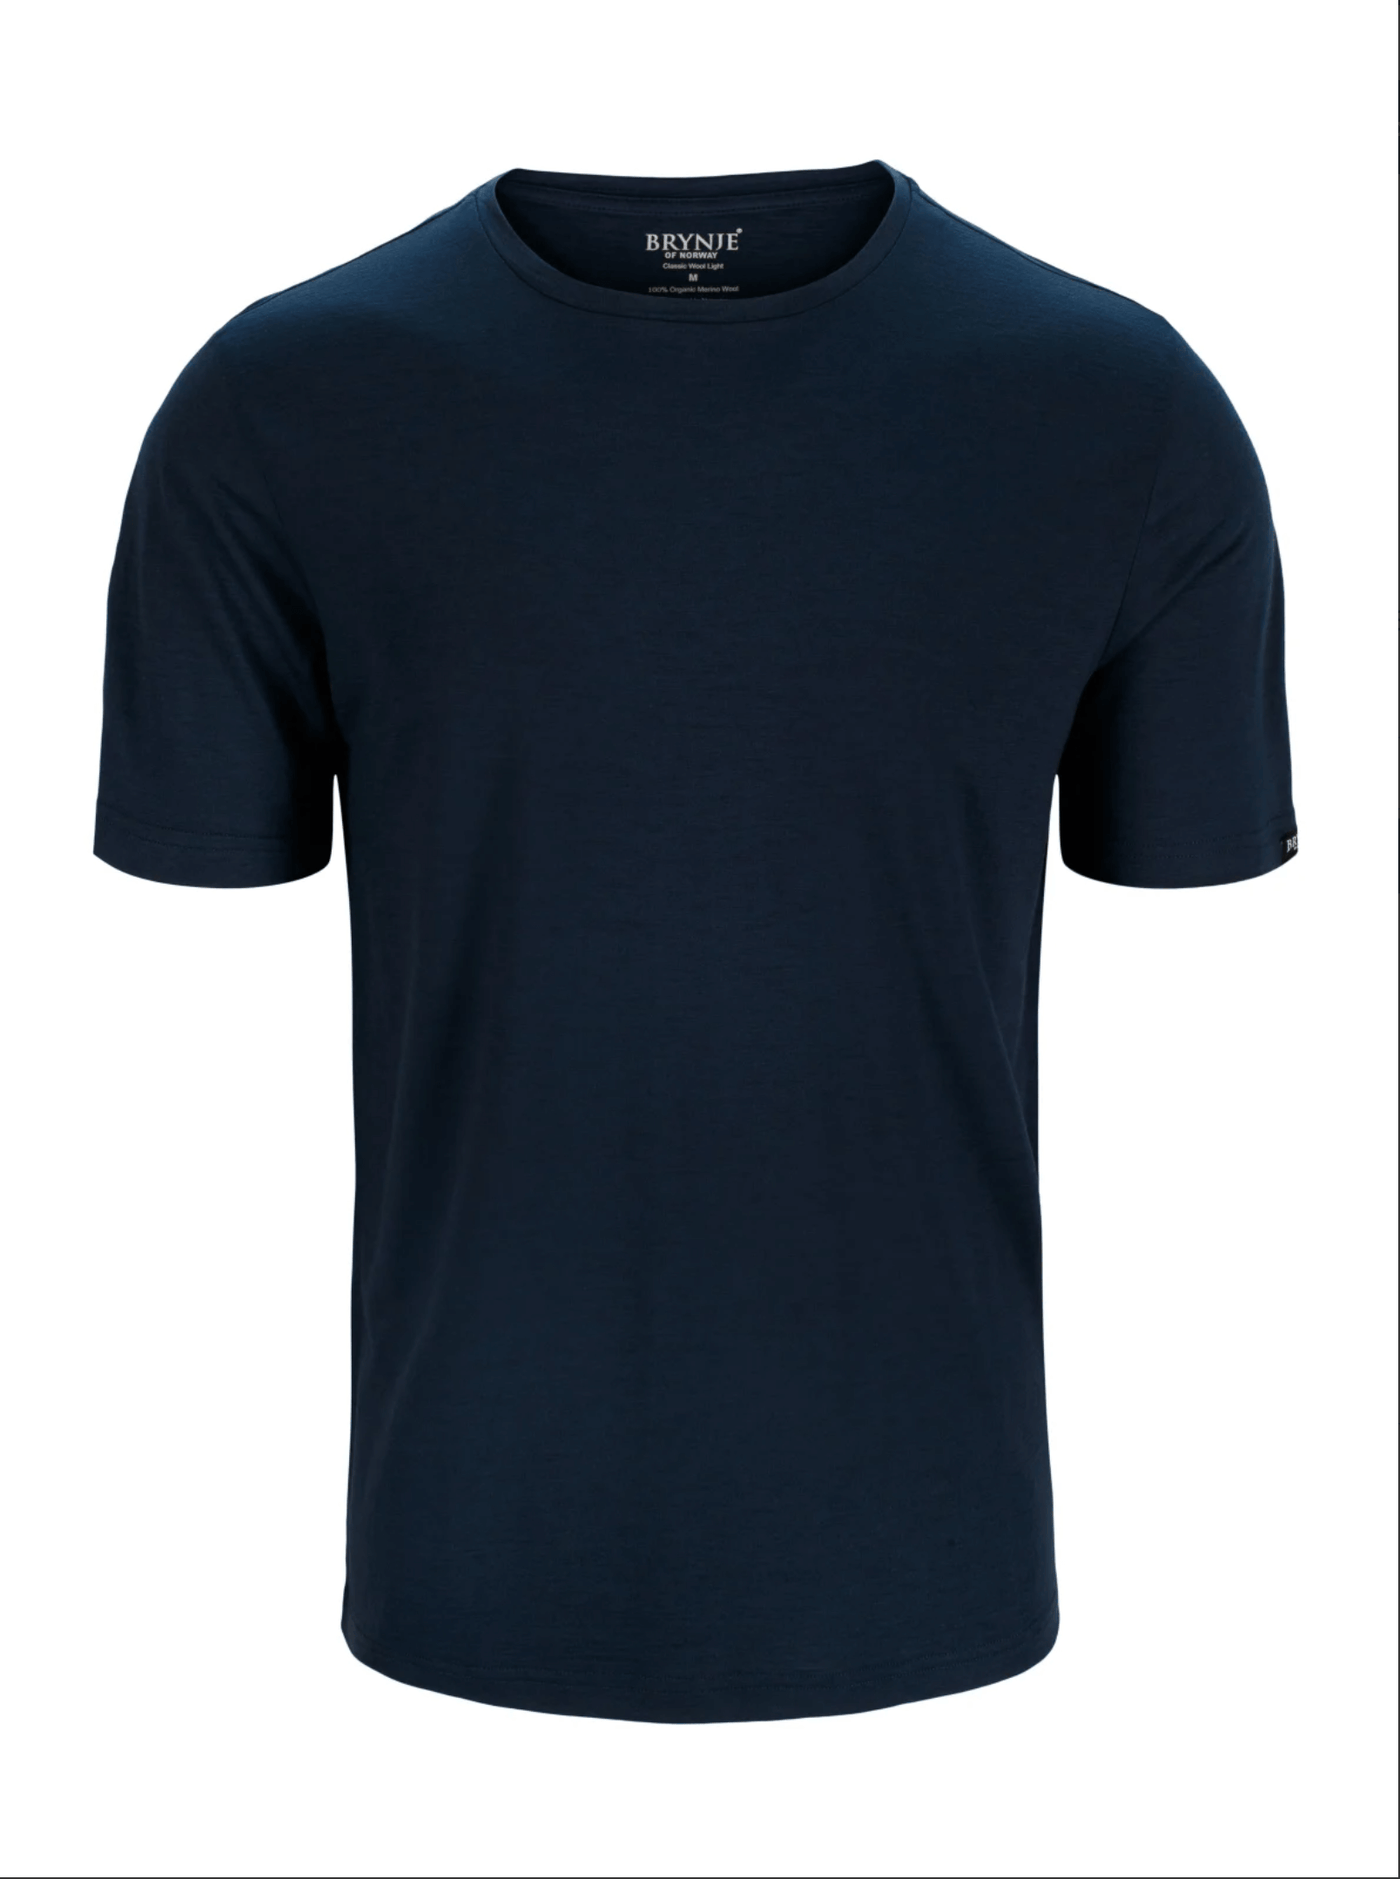 Brynje Classic Wool Light T-shirt